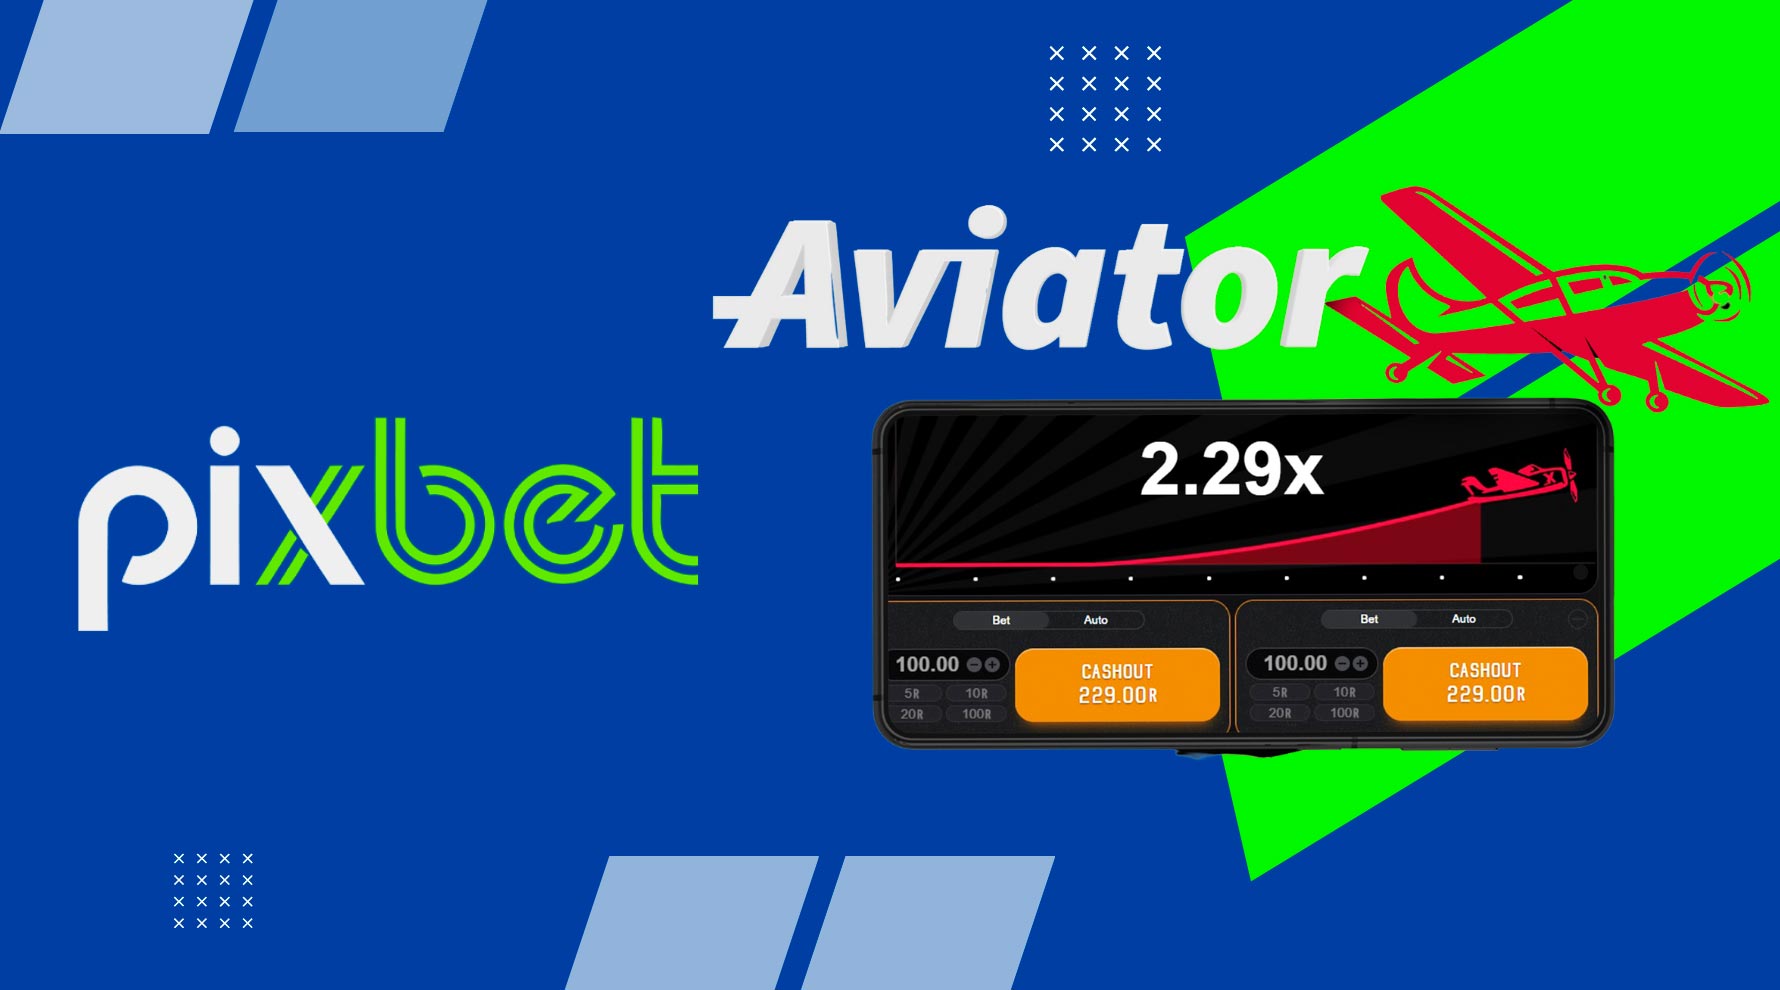 Aviator #aviator #shorts #bet #estrelabet #betano #pixbet